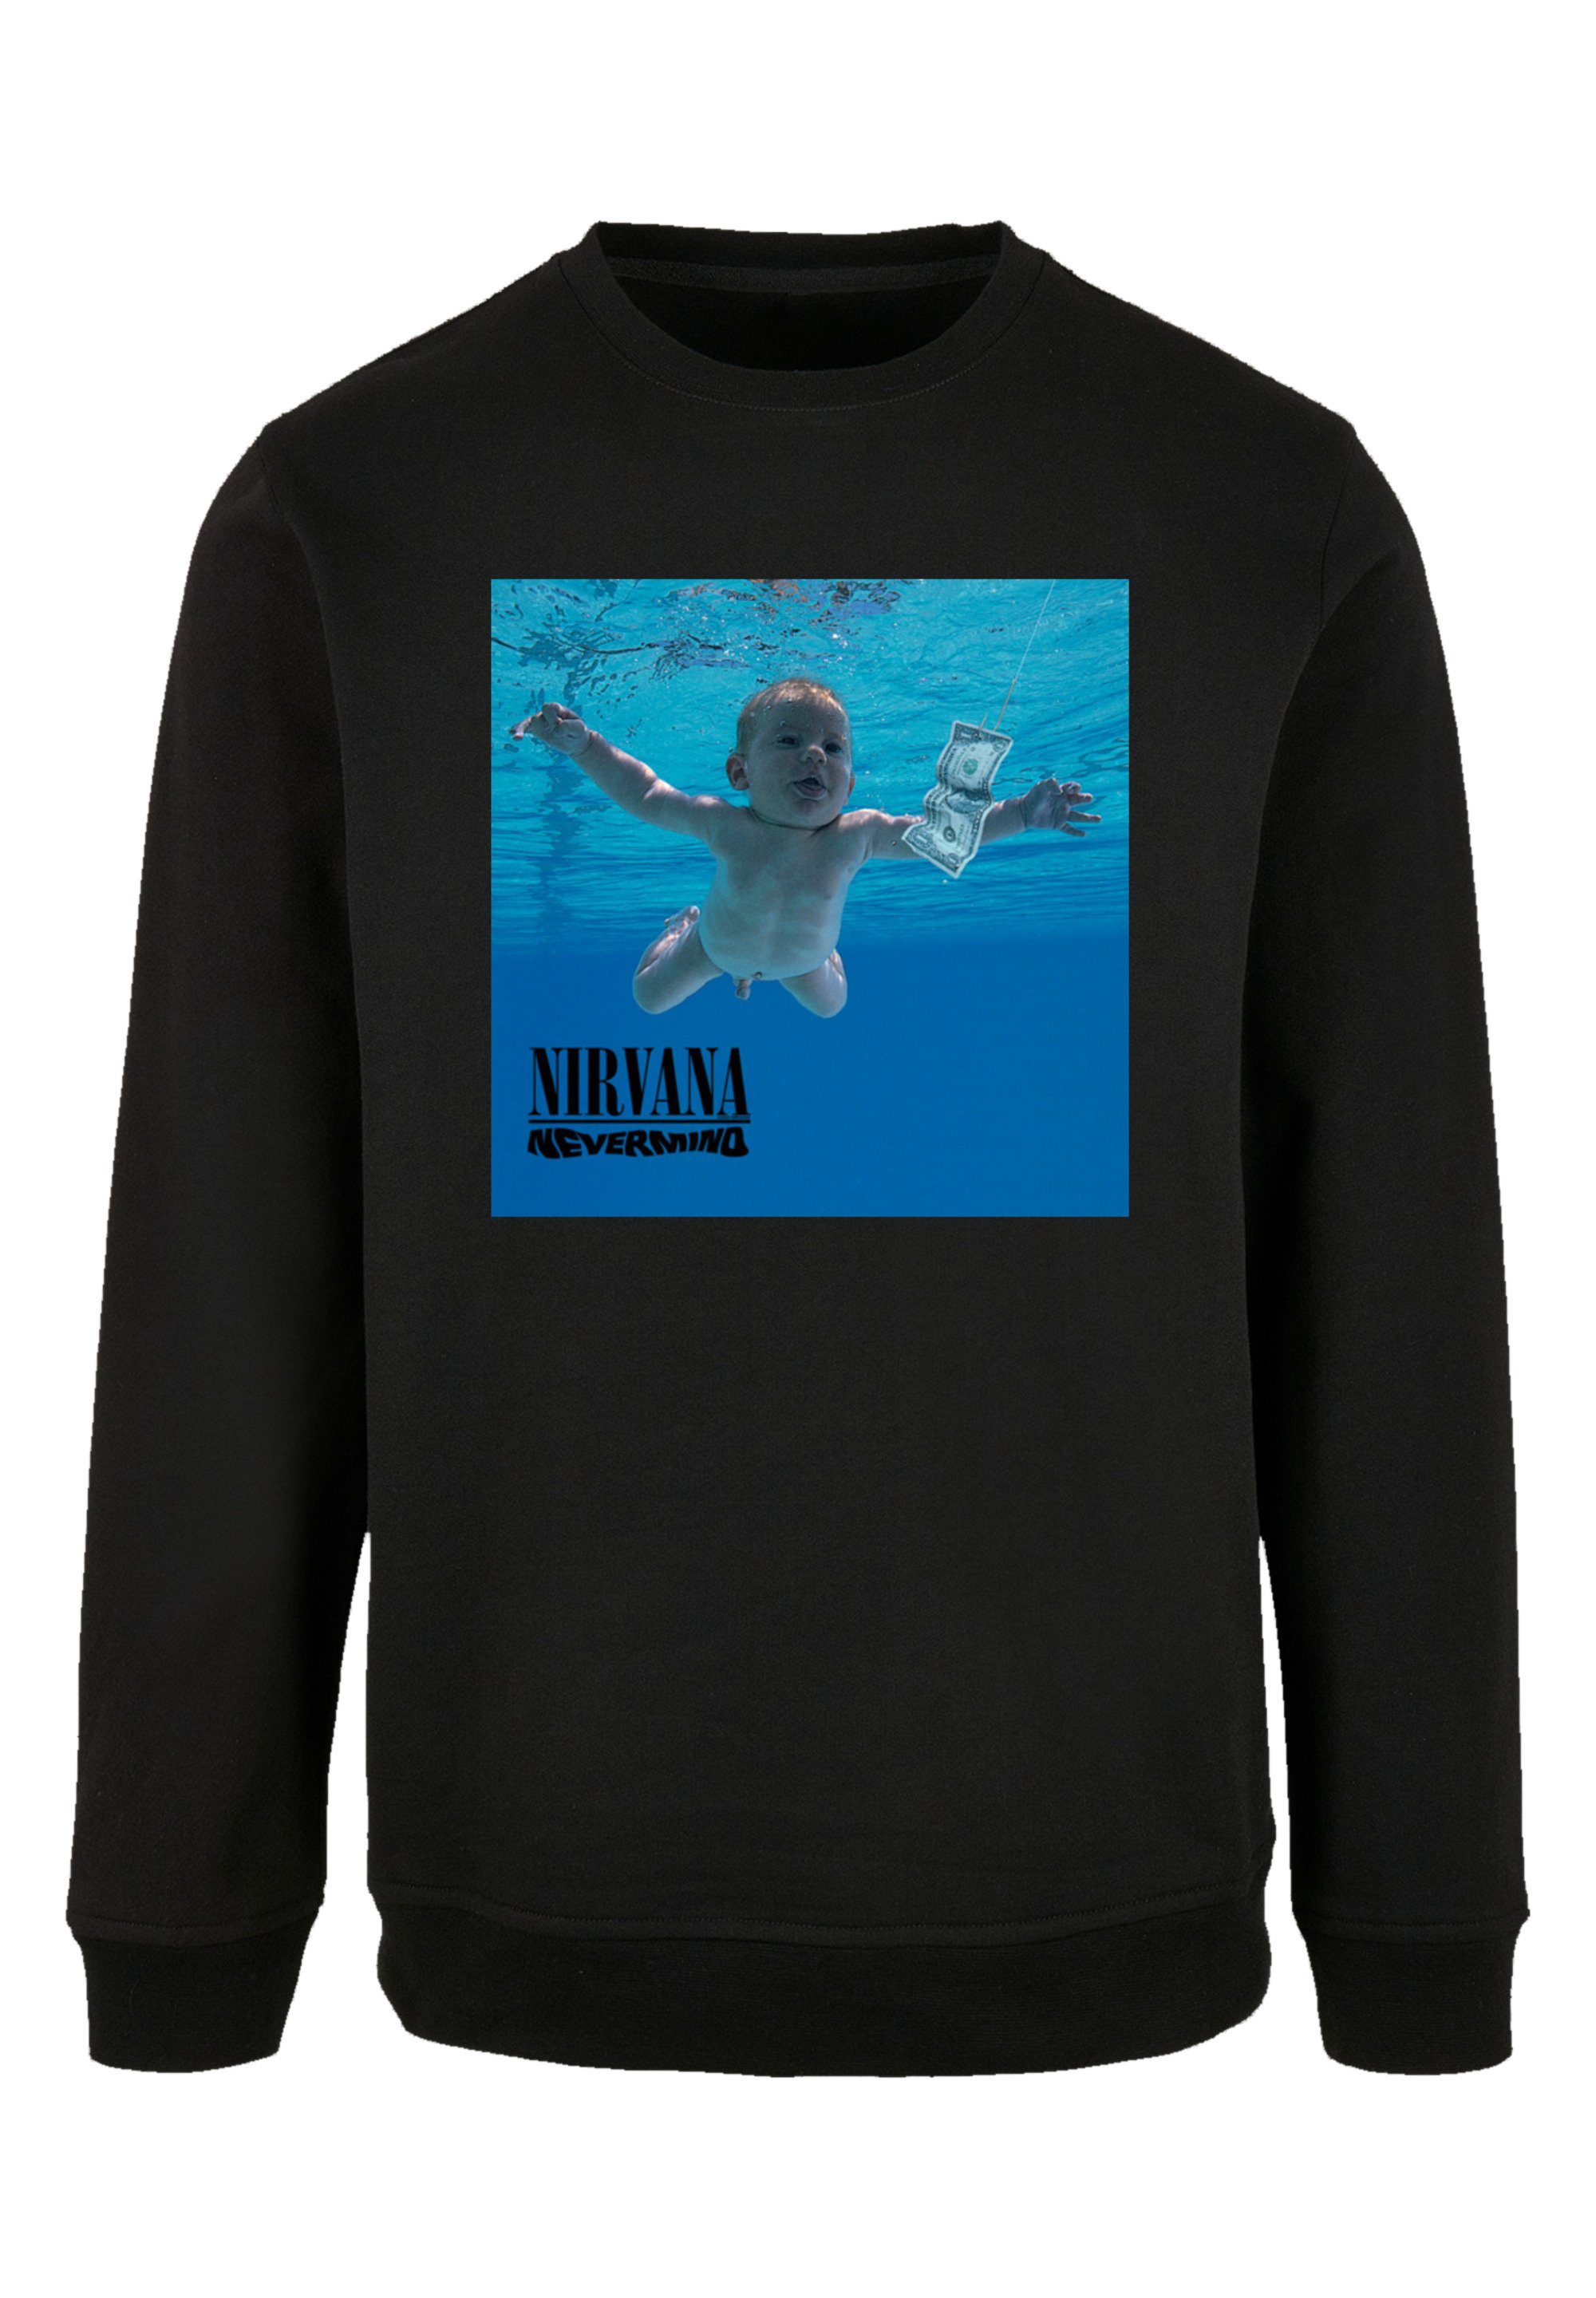 F4NT4STIC Sweatshirt Nirvana Rock Band Nevermind Album Premium Qualität,  Bequemer Schnitt mit entspanntem Tragekomfort